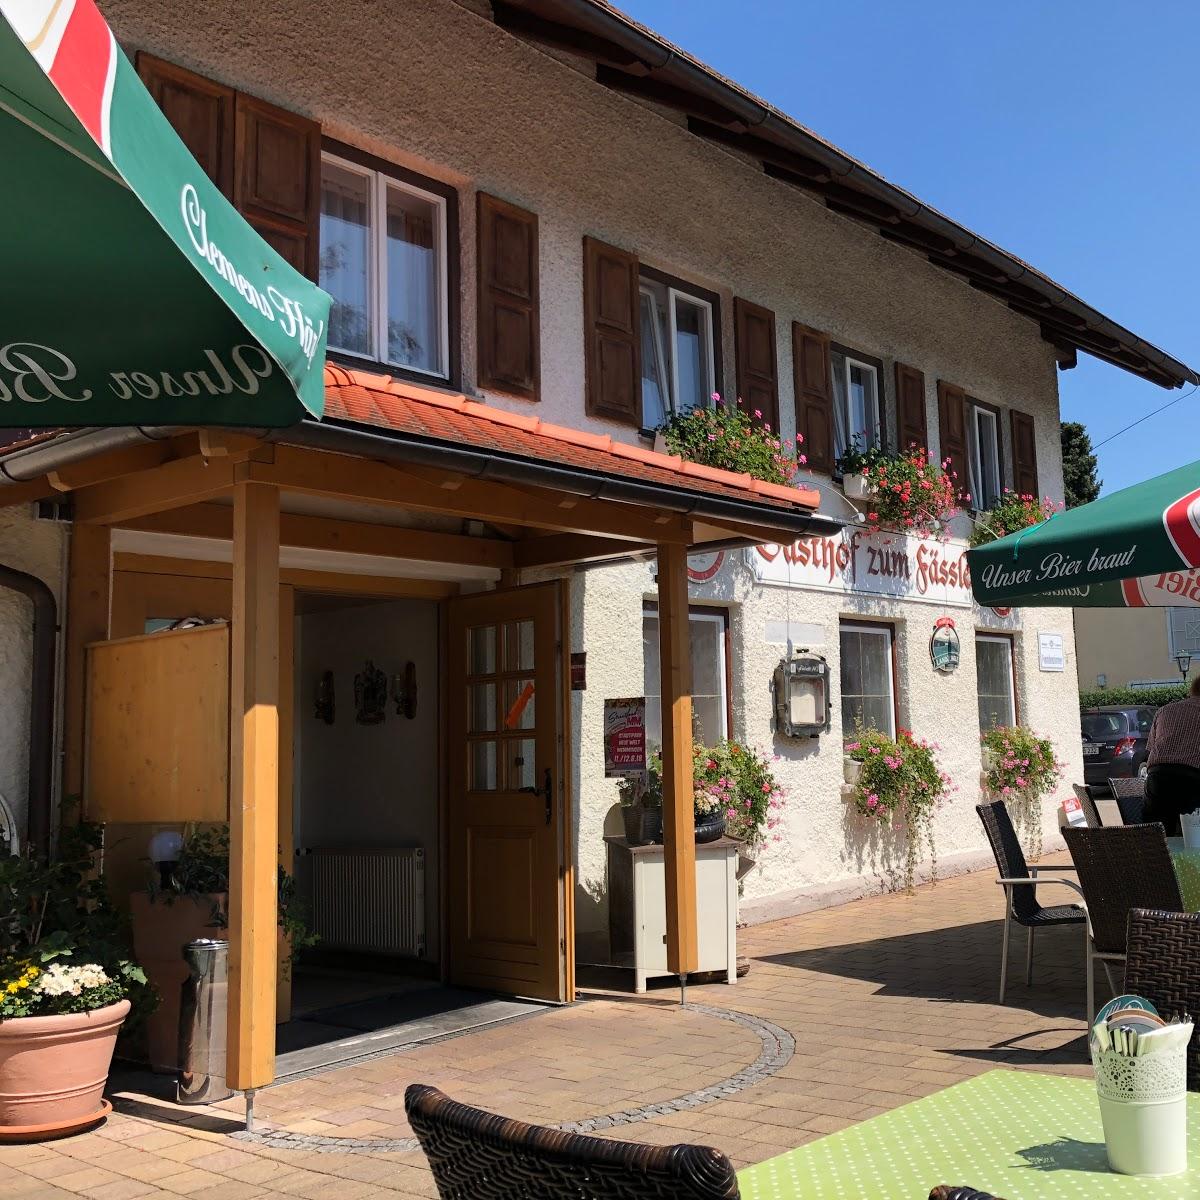 Restaurant "Gasthof zum Fässle" in Altusried